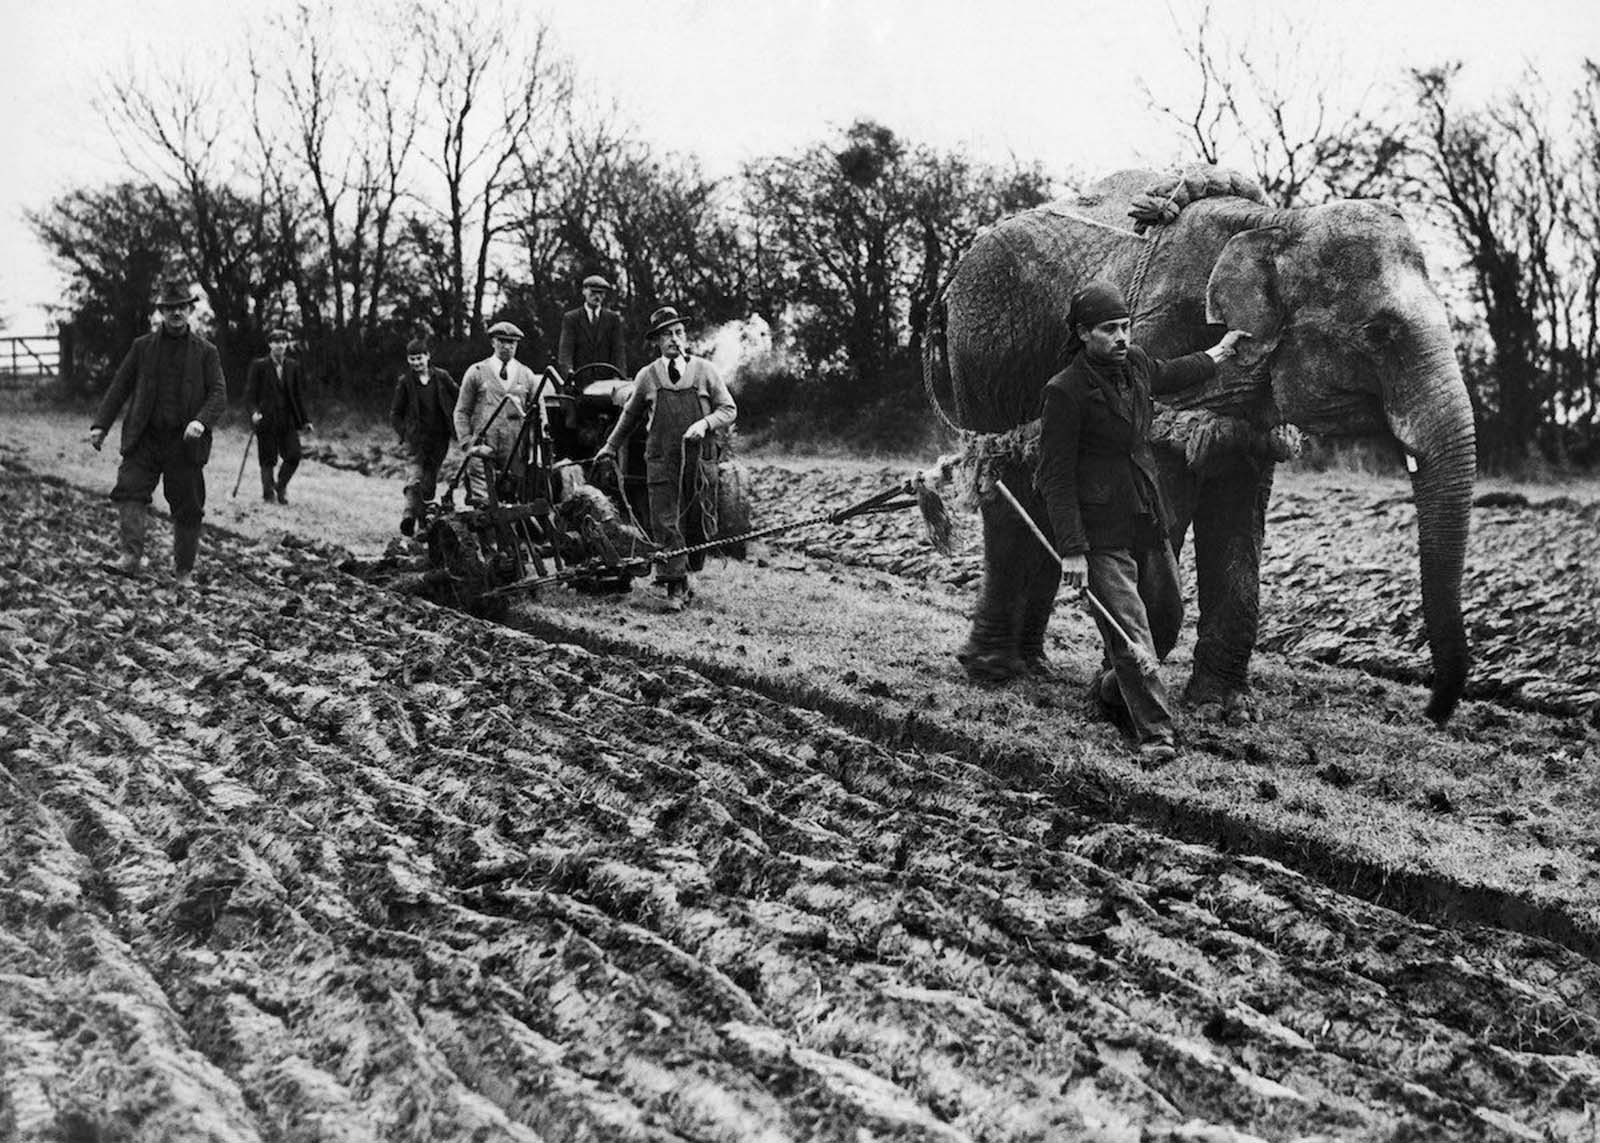 elephants in war